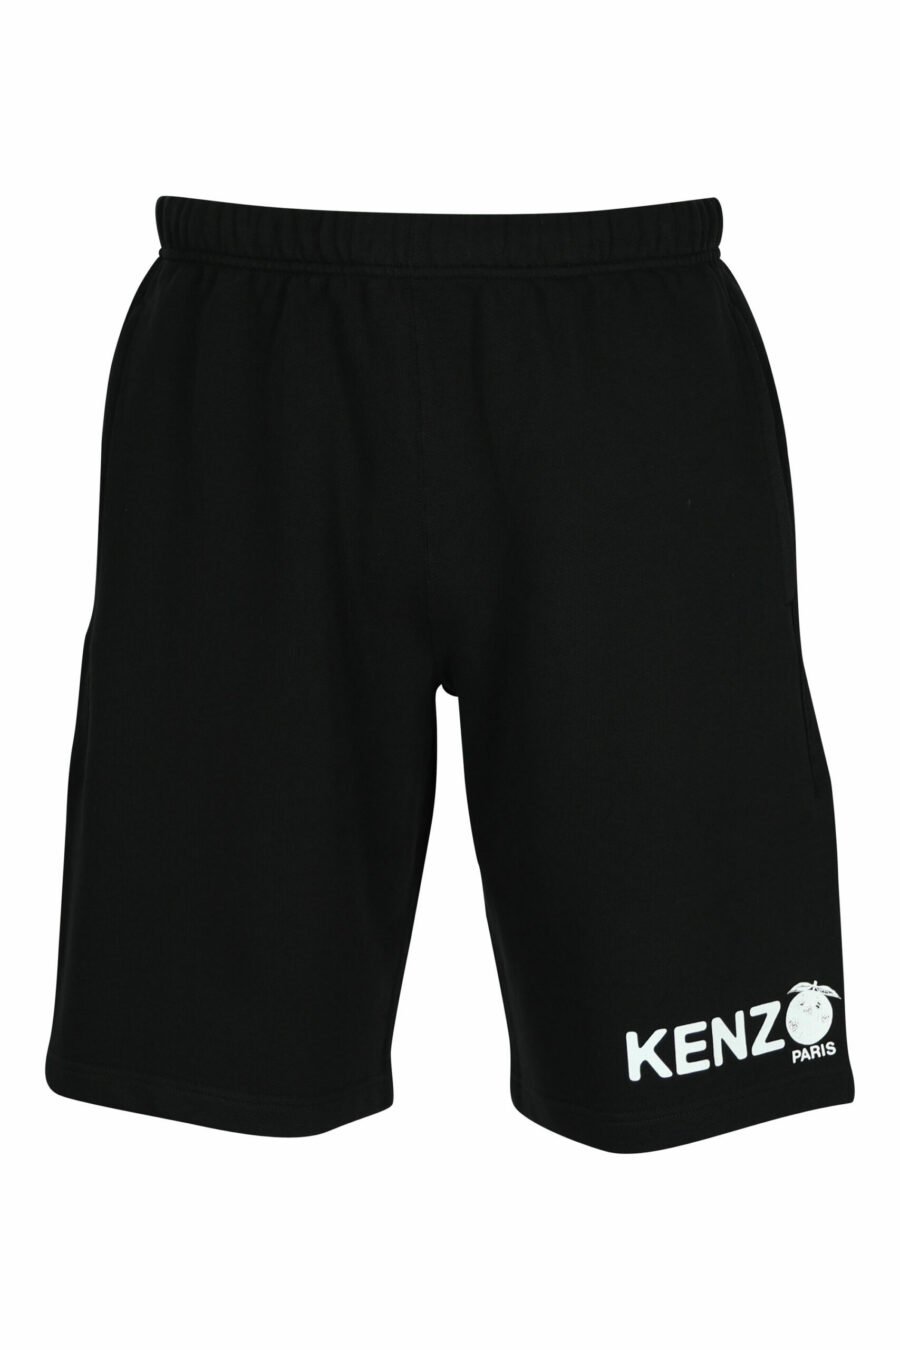 Pantalón de chándal negro corto con minilogo "kenzo orange" - 3612230620872 scaled